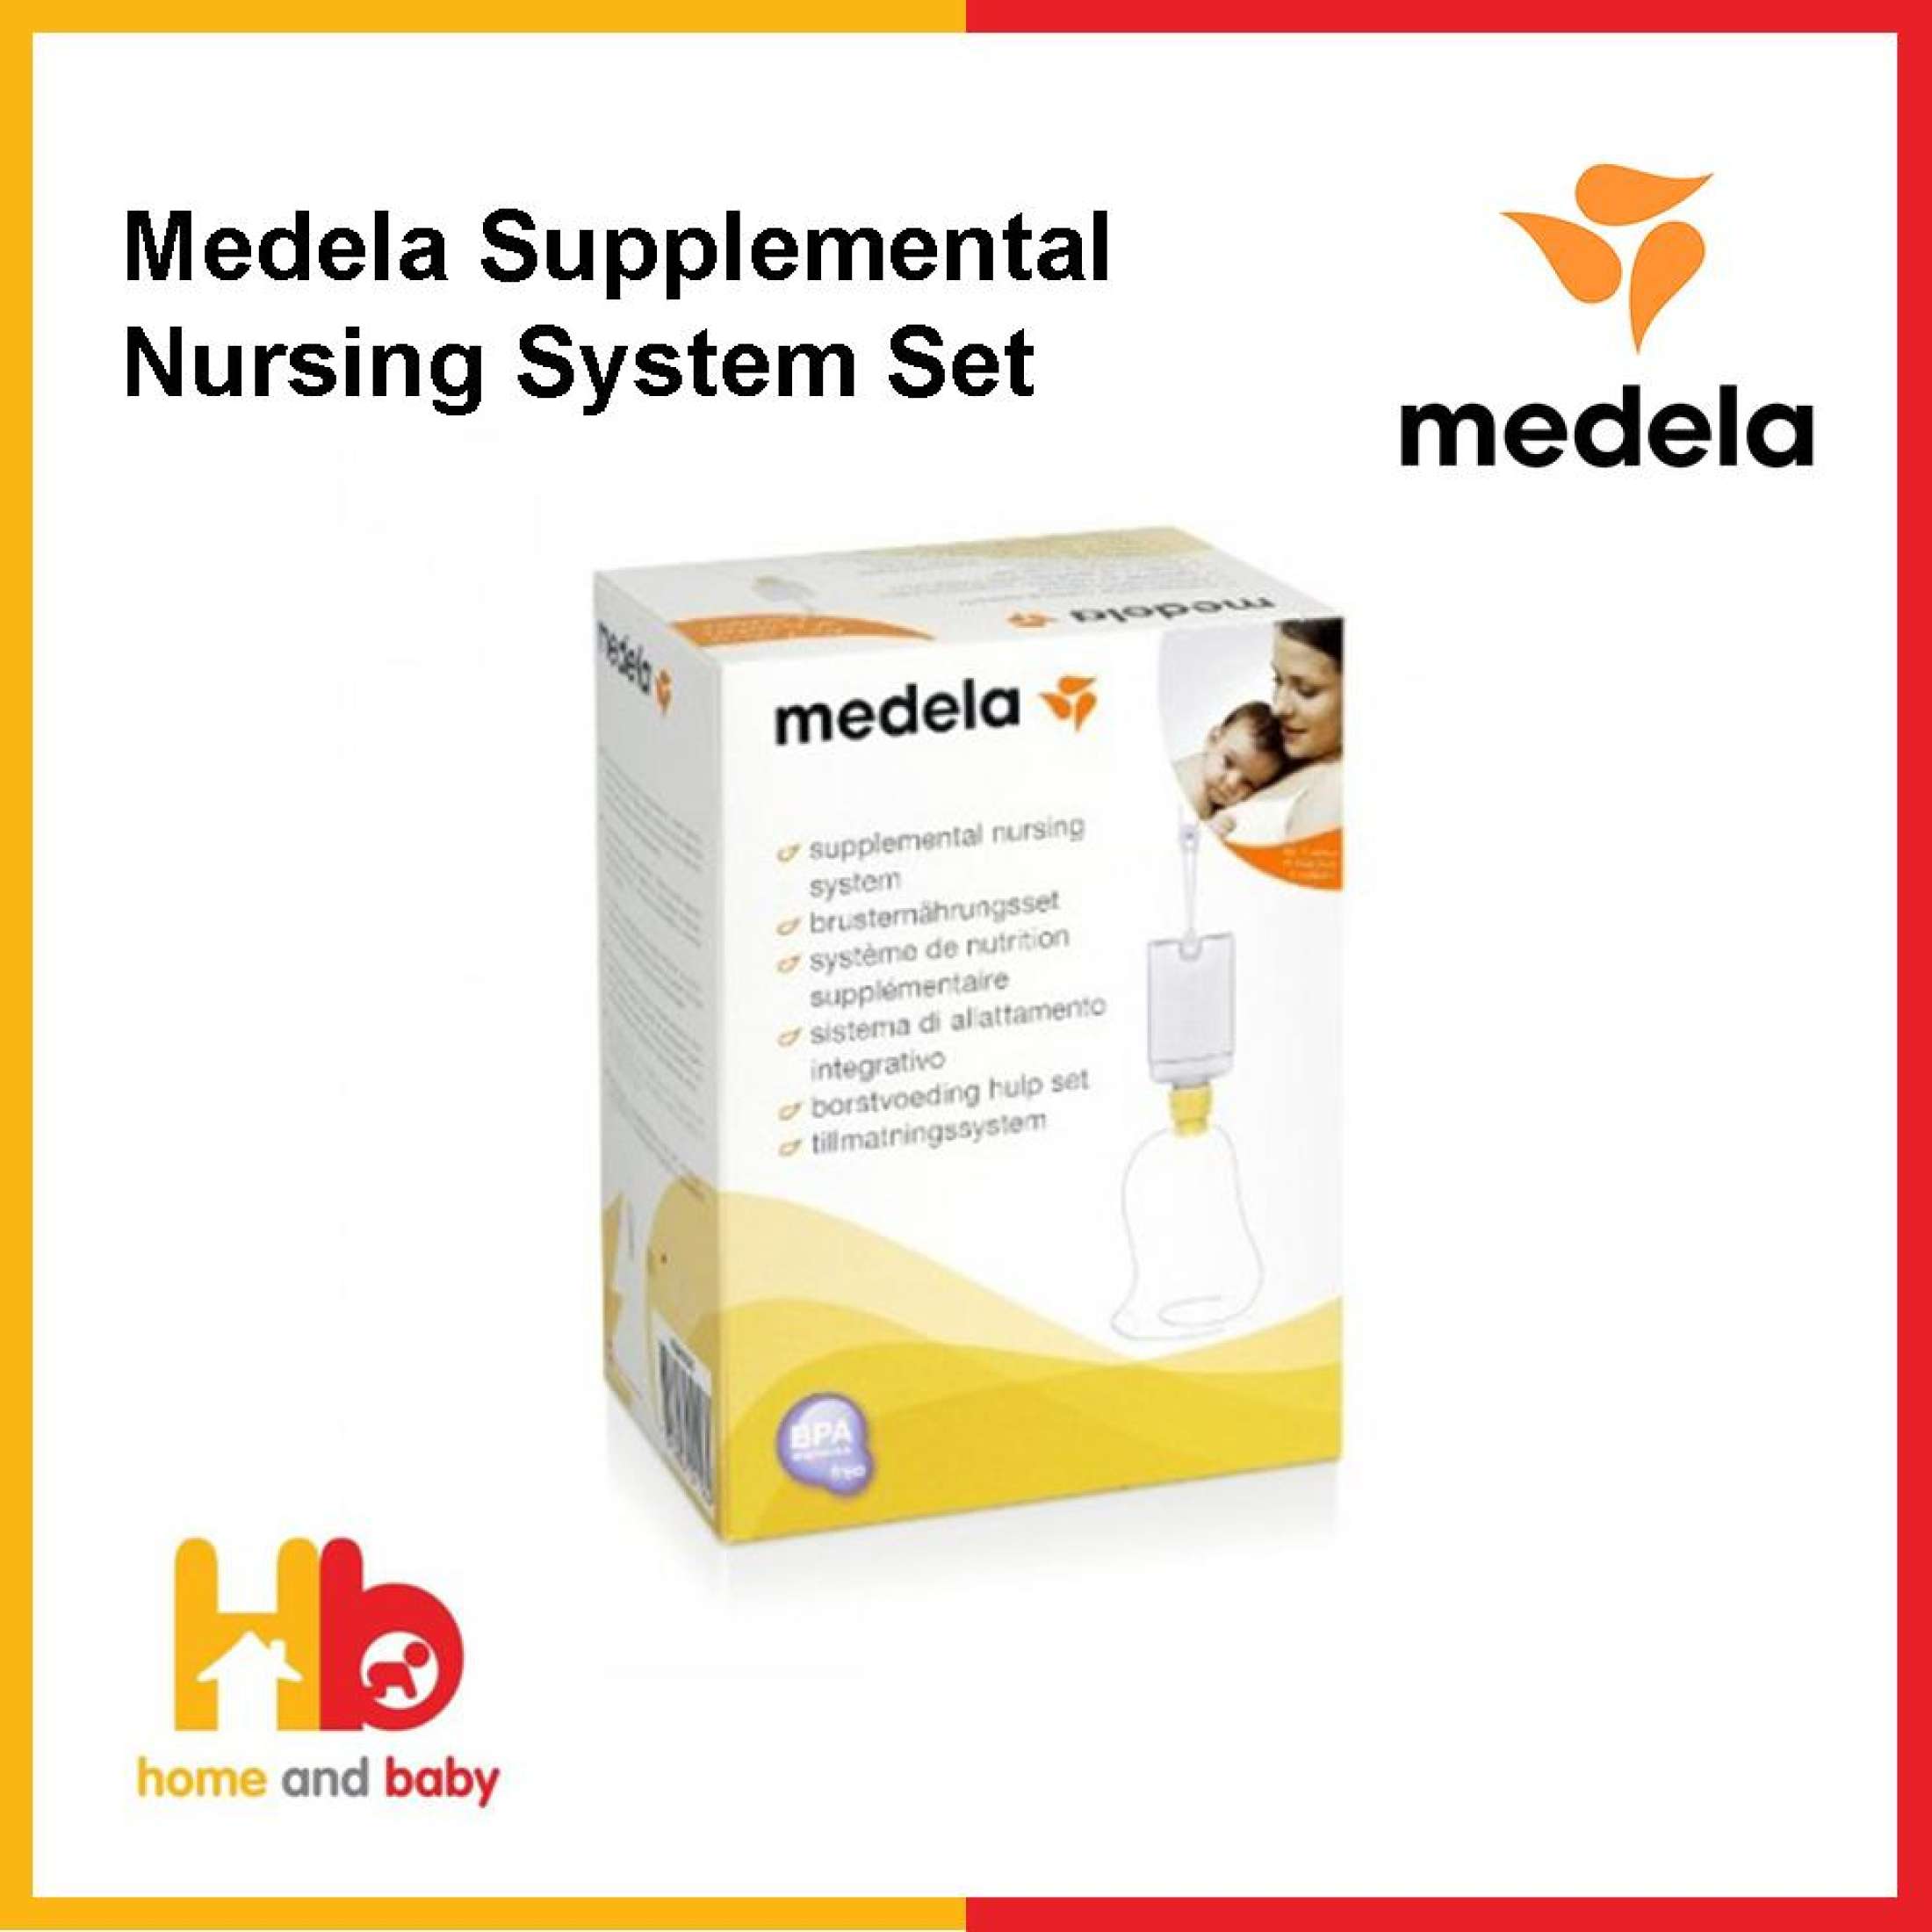 Medela Supplemental Nursing System